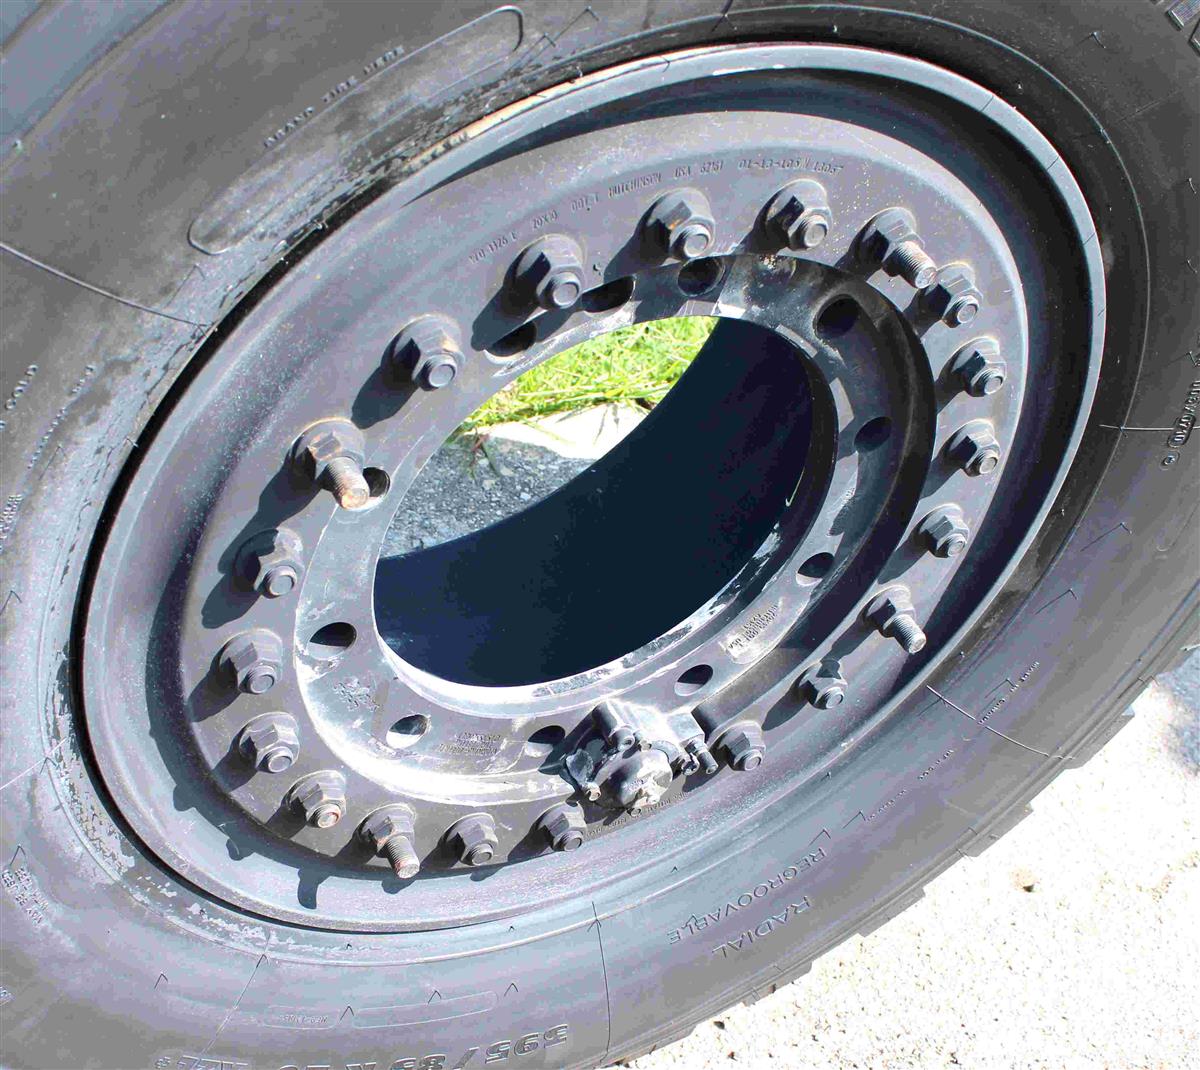 TI-1846 | TI-1846 Michelin 39585R20 XZL Tire Mounted on Hutchinson Aluminum Rim  (3a).jpg